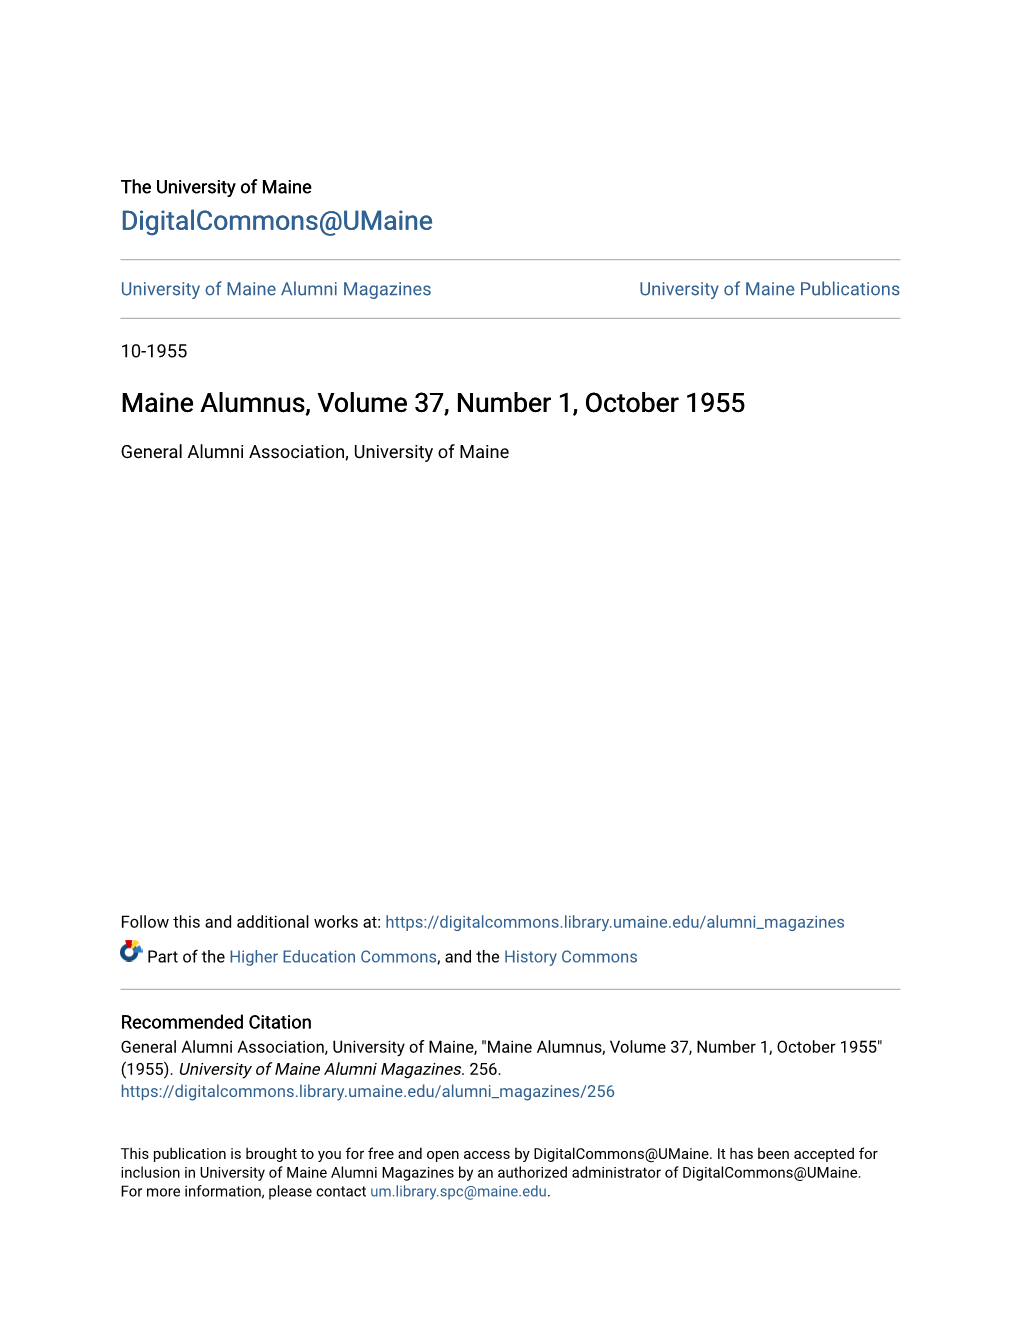 Maine Alumnus, Volume 37, Number 1, October 1955